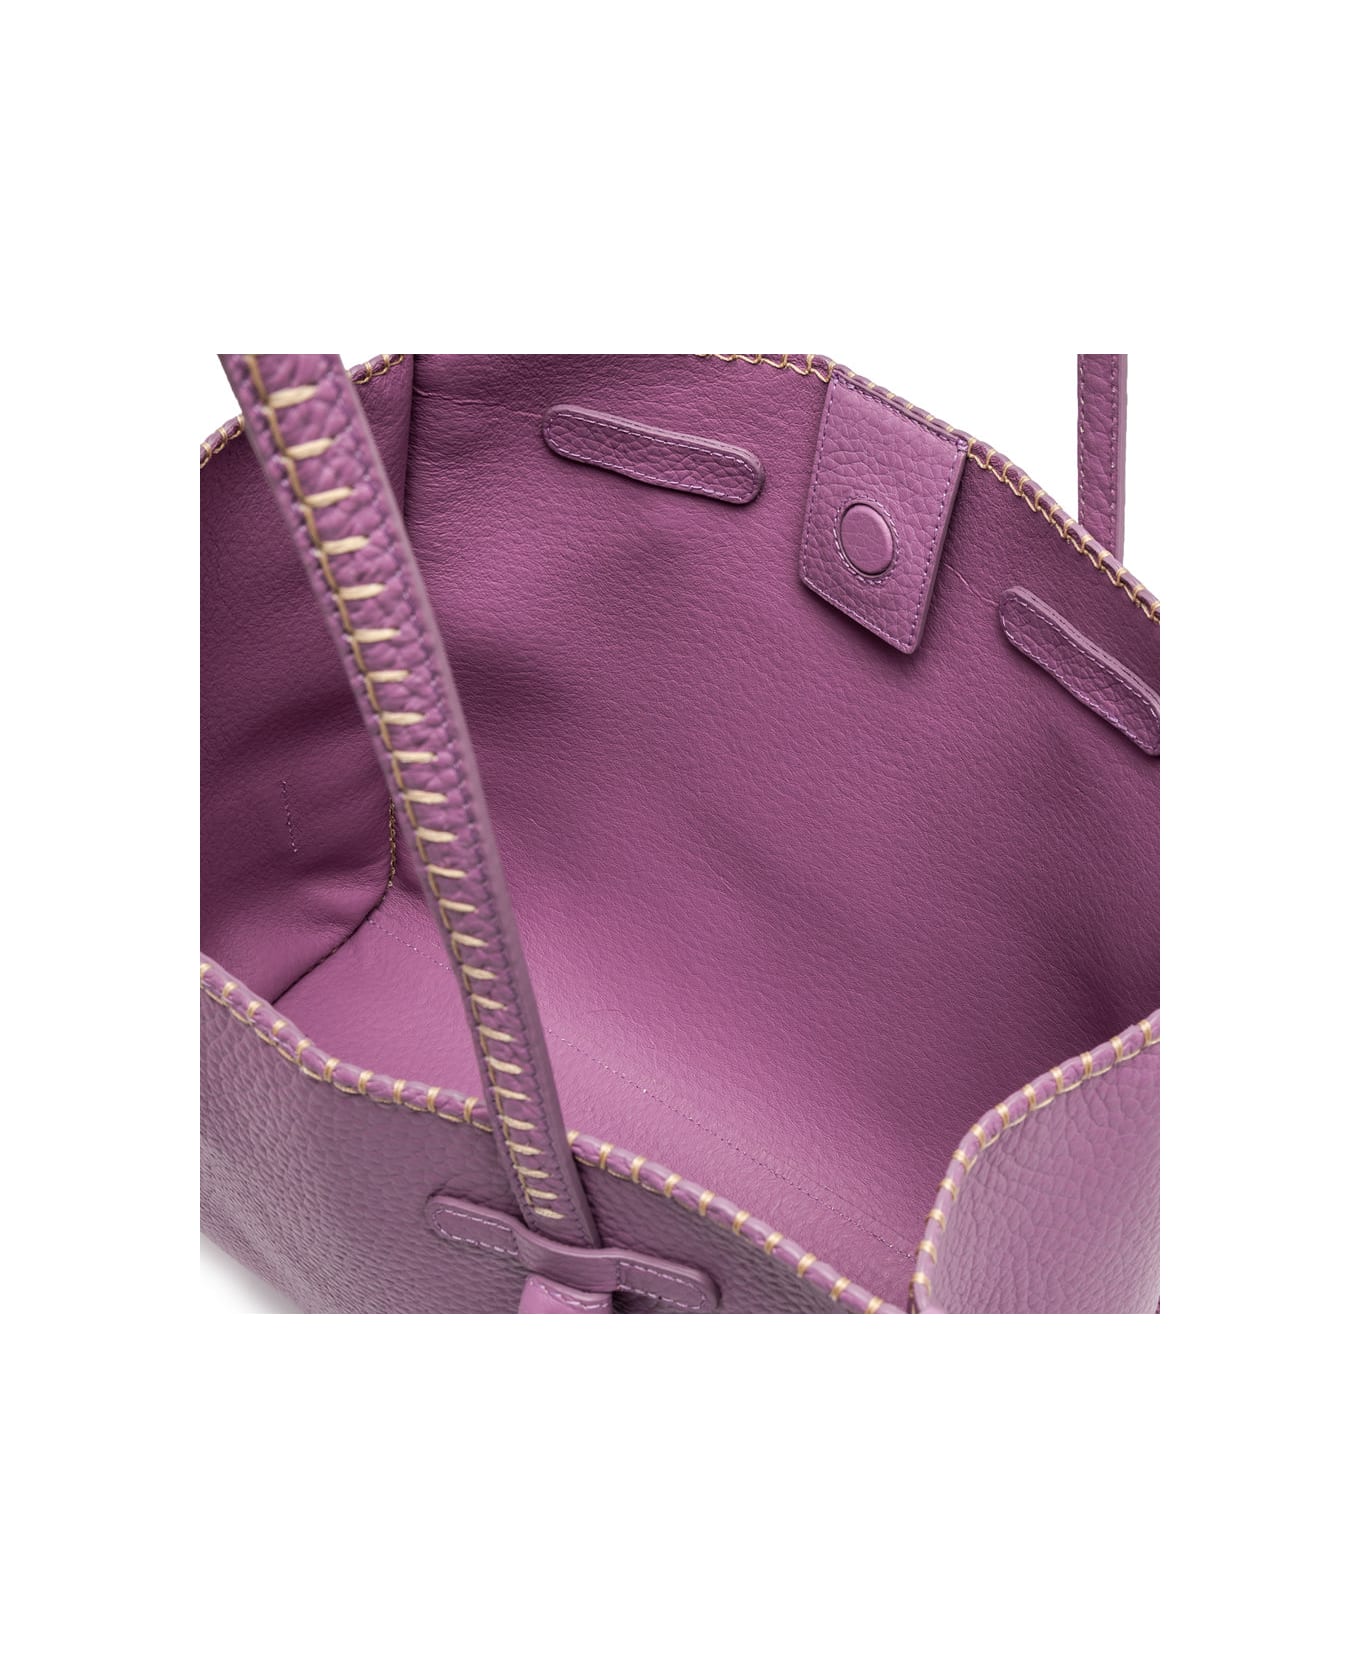 Gianni Chiarini Bag Marcella - Argyle Purple